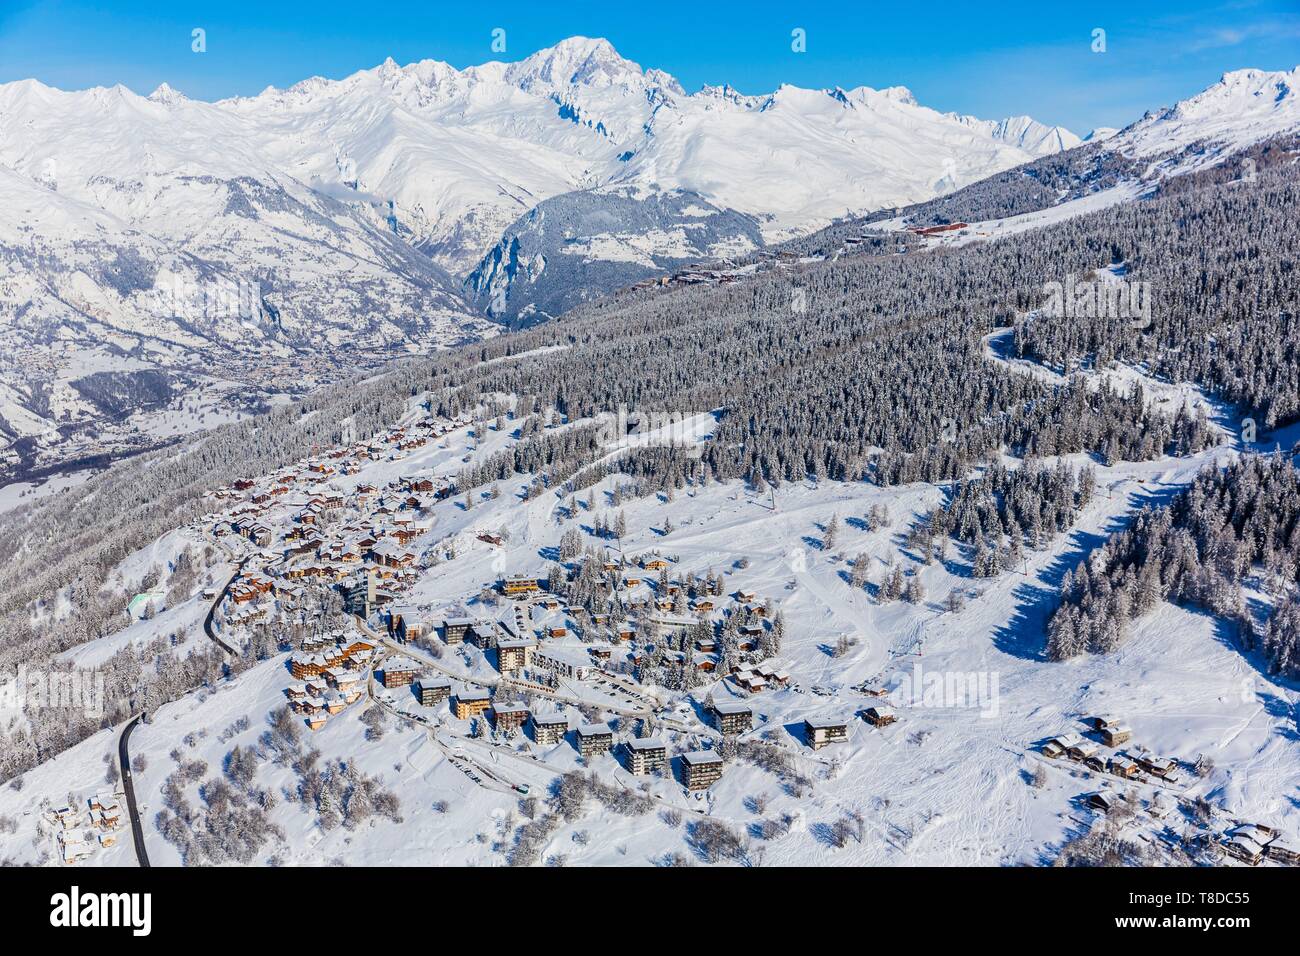 Francia, Savoie, massiccio della Vanoise, valle della Haute Tarentaise, Peisey-Nancroix, Peisey-Vallandry, parte dell'area di Paradiski, la vista del Monte Bianco (4810m), Les Arcs e Bourg-Saint-Maurice (vista aerea) Foto Stock